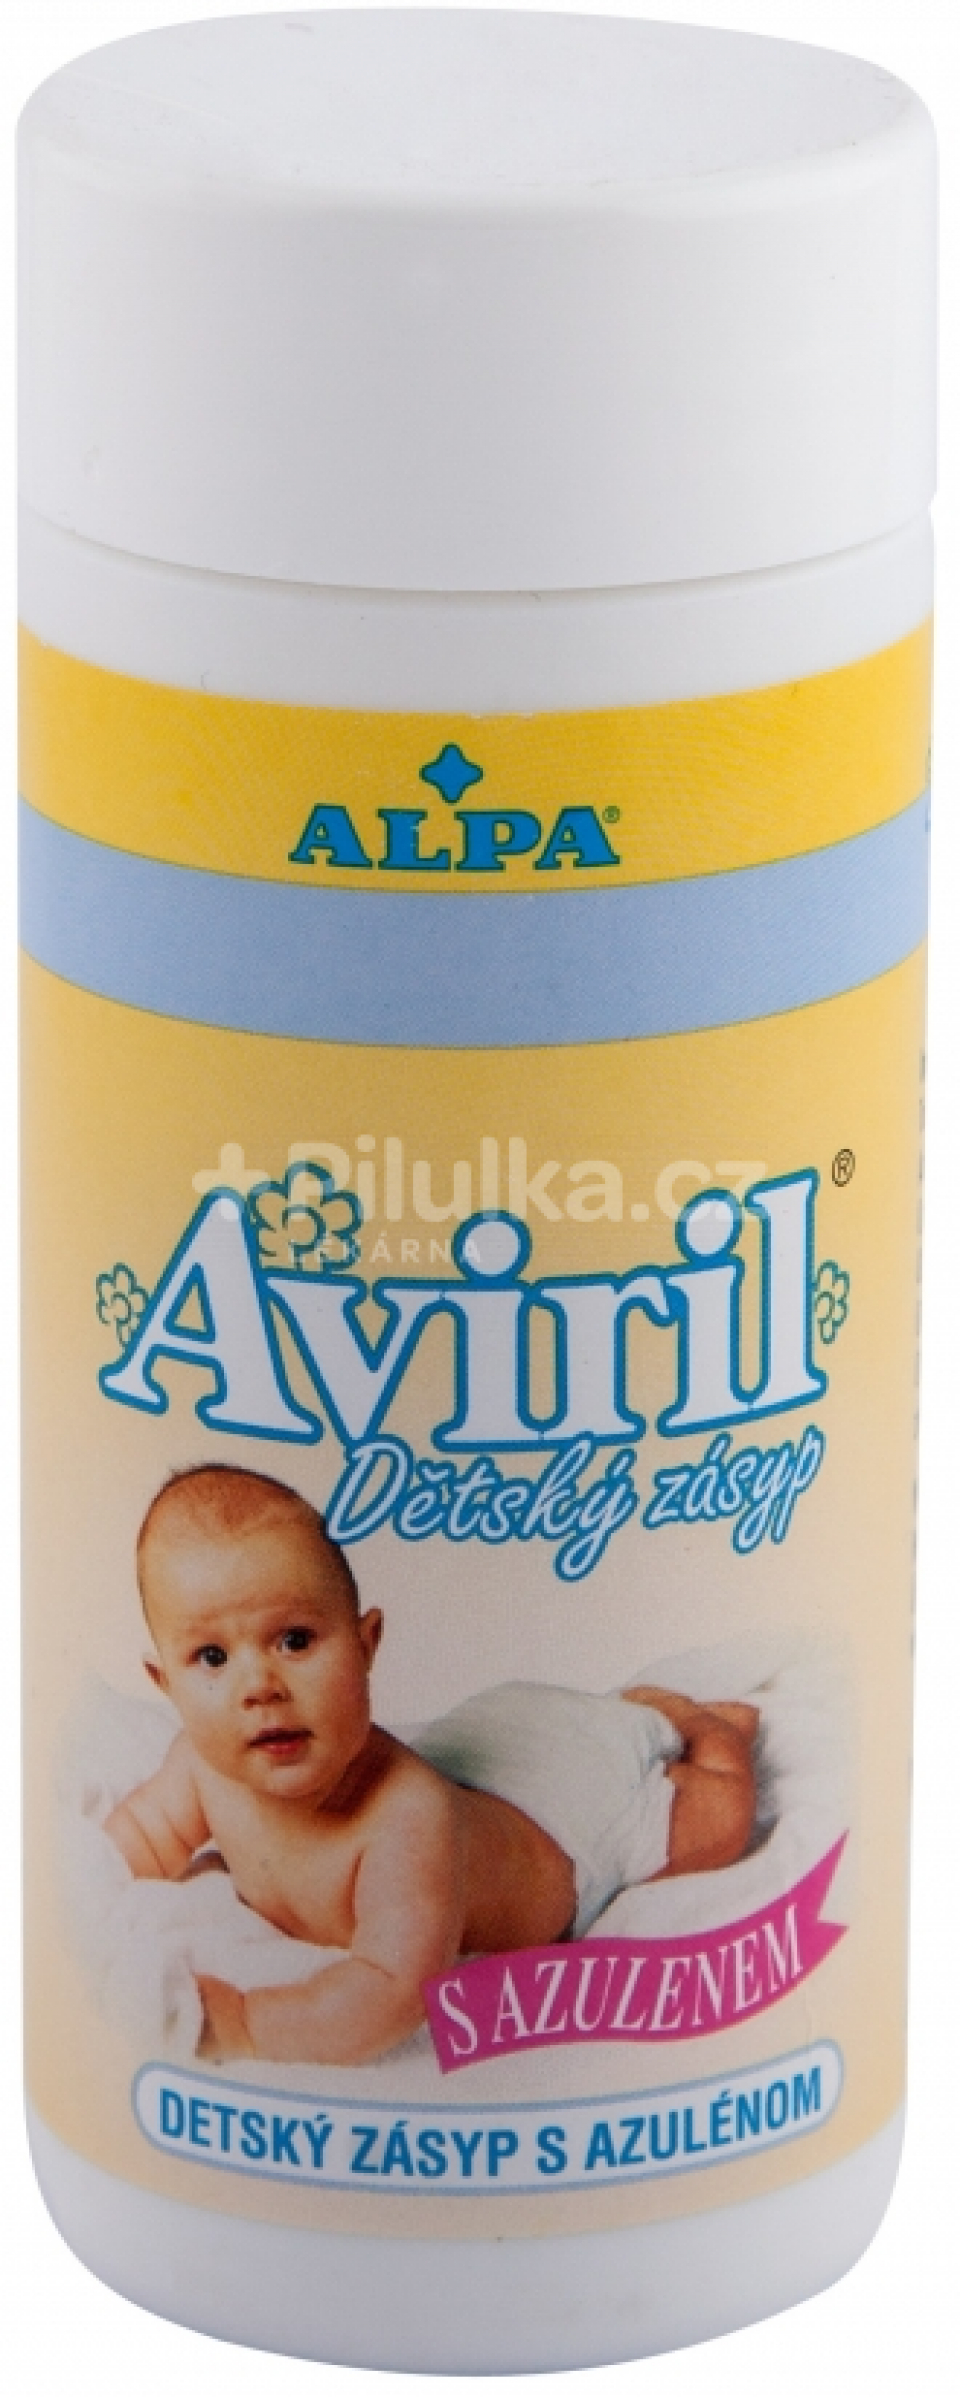 Alpa Aviril Dětský zásyp s azulenem 100g